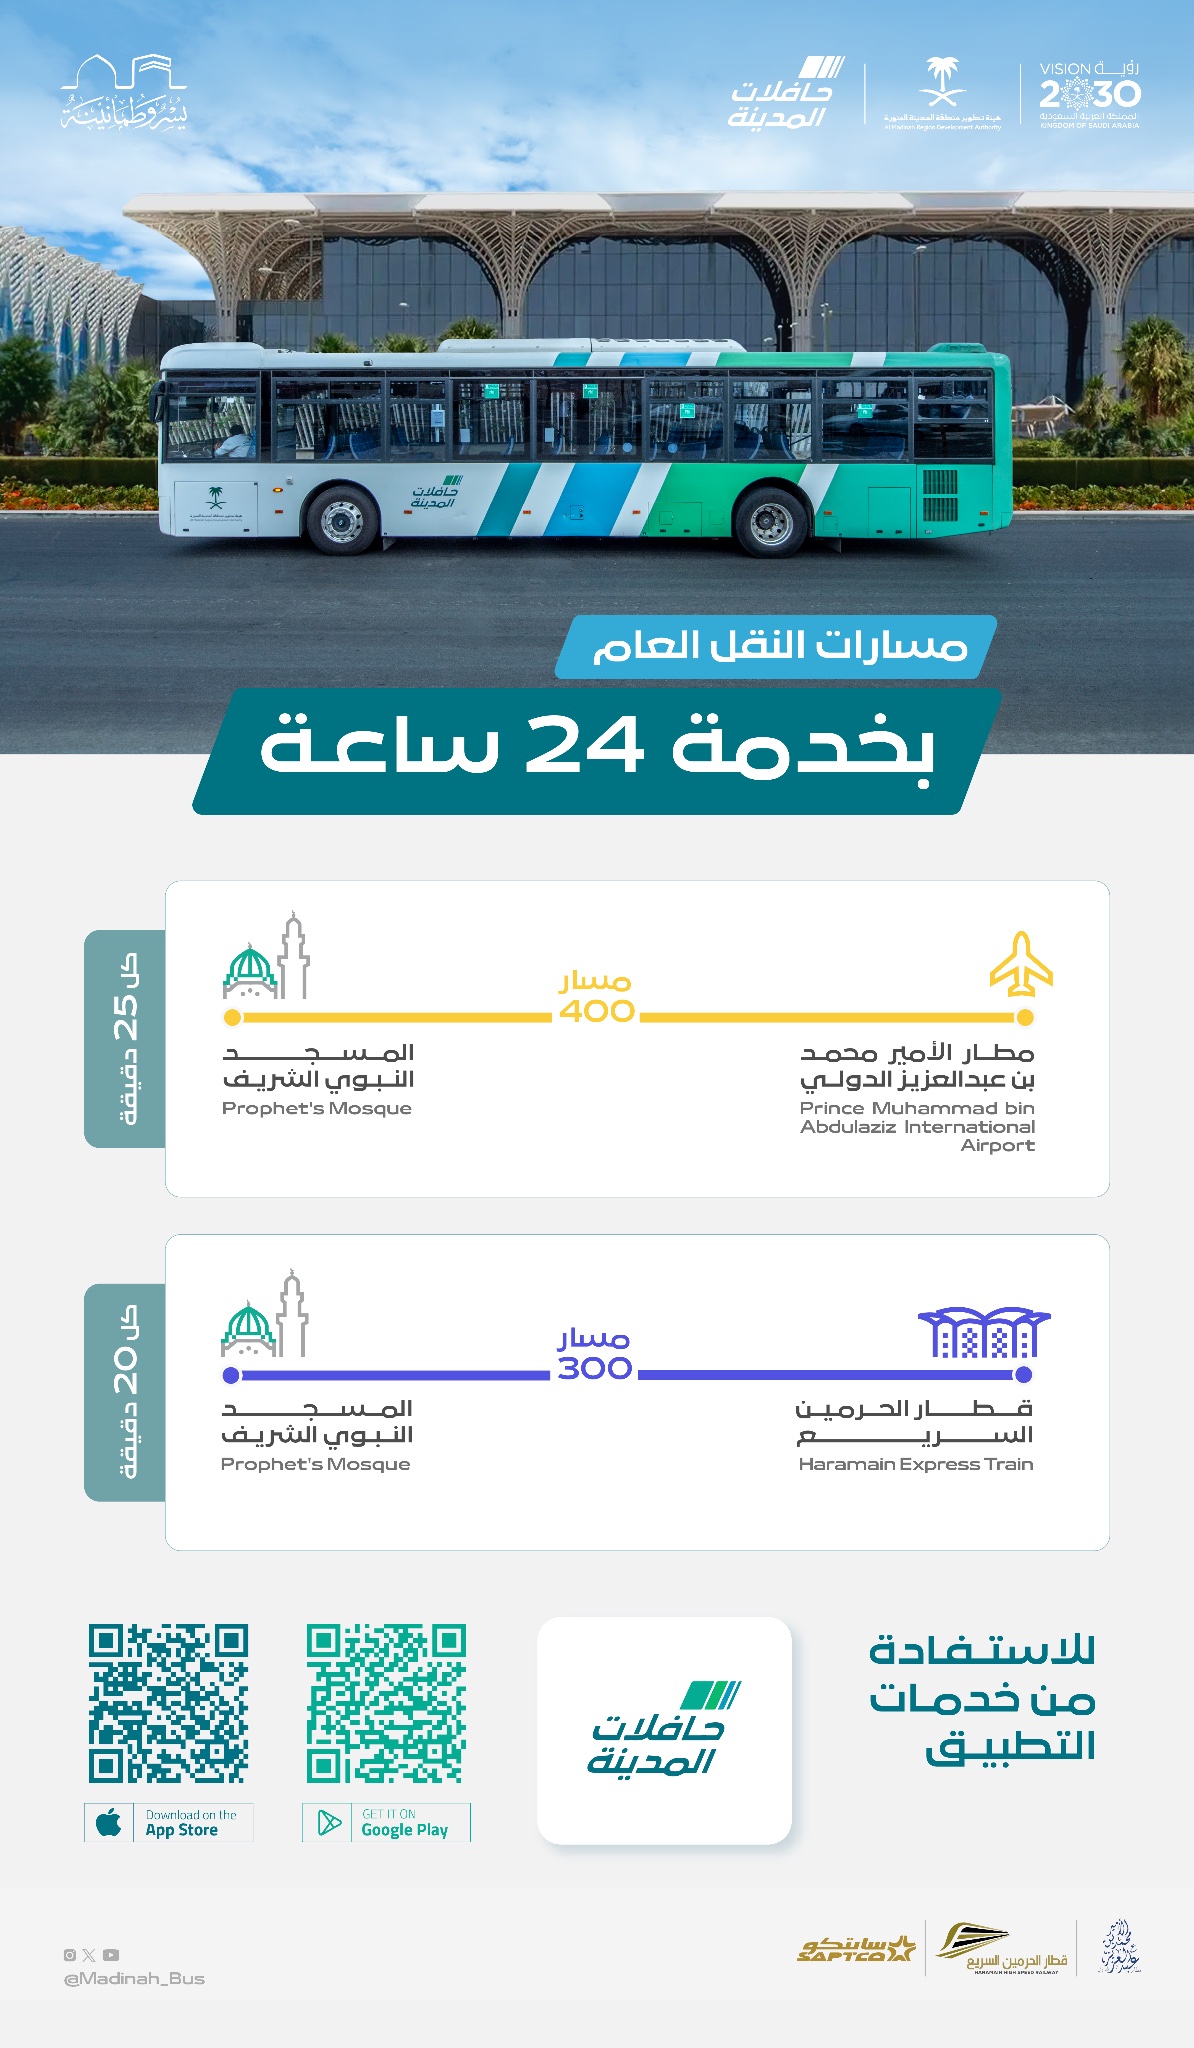 حافلات المدينة توفر مسارين للنقل إلى المسجد النبوي على مدار الـ 24 ساعة